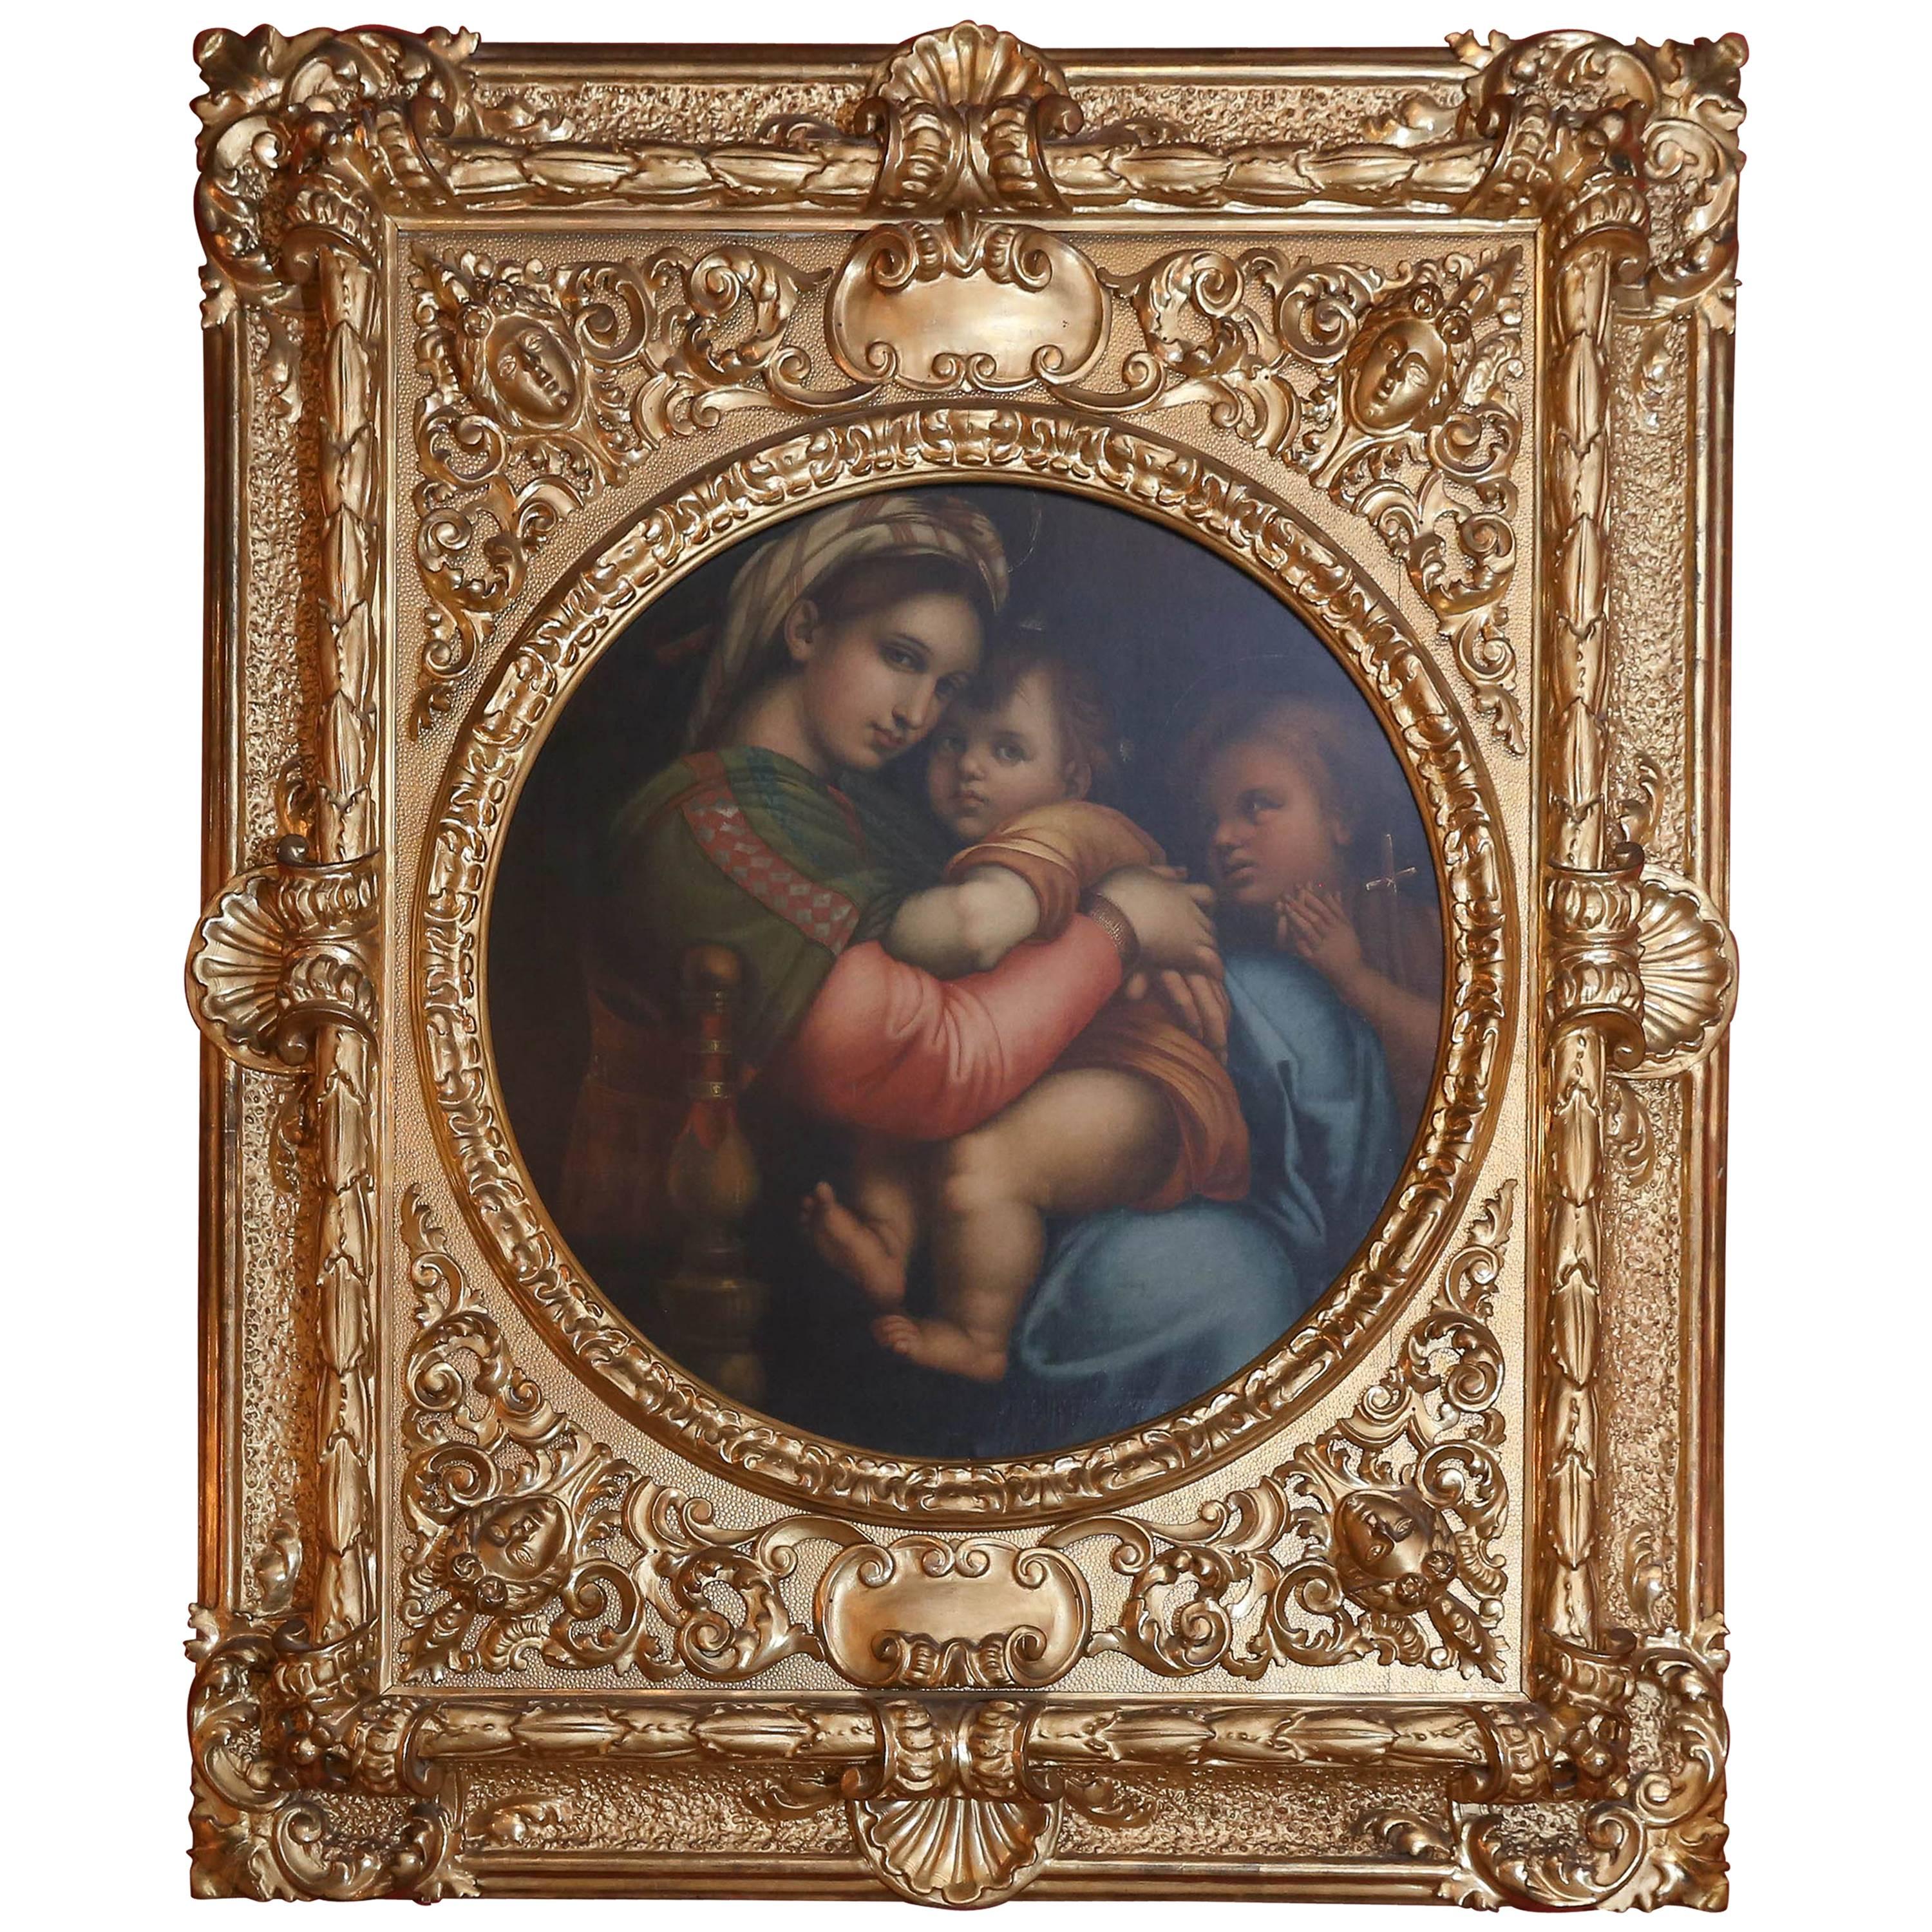 19th Century Oil on Canvas "Madonna Della Sedia" After Raphael, Raffaello Sanzio